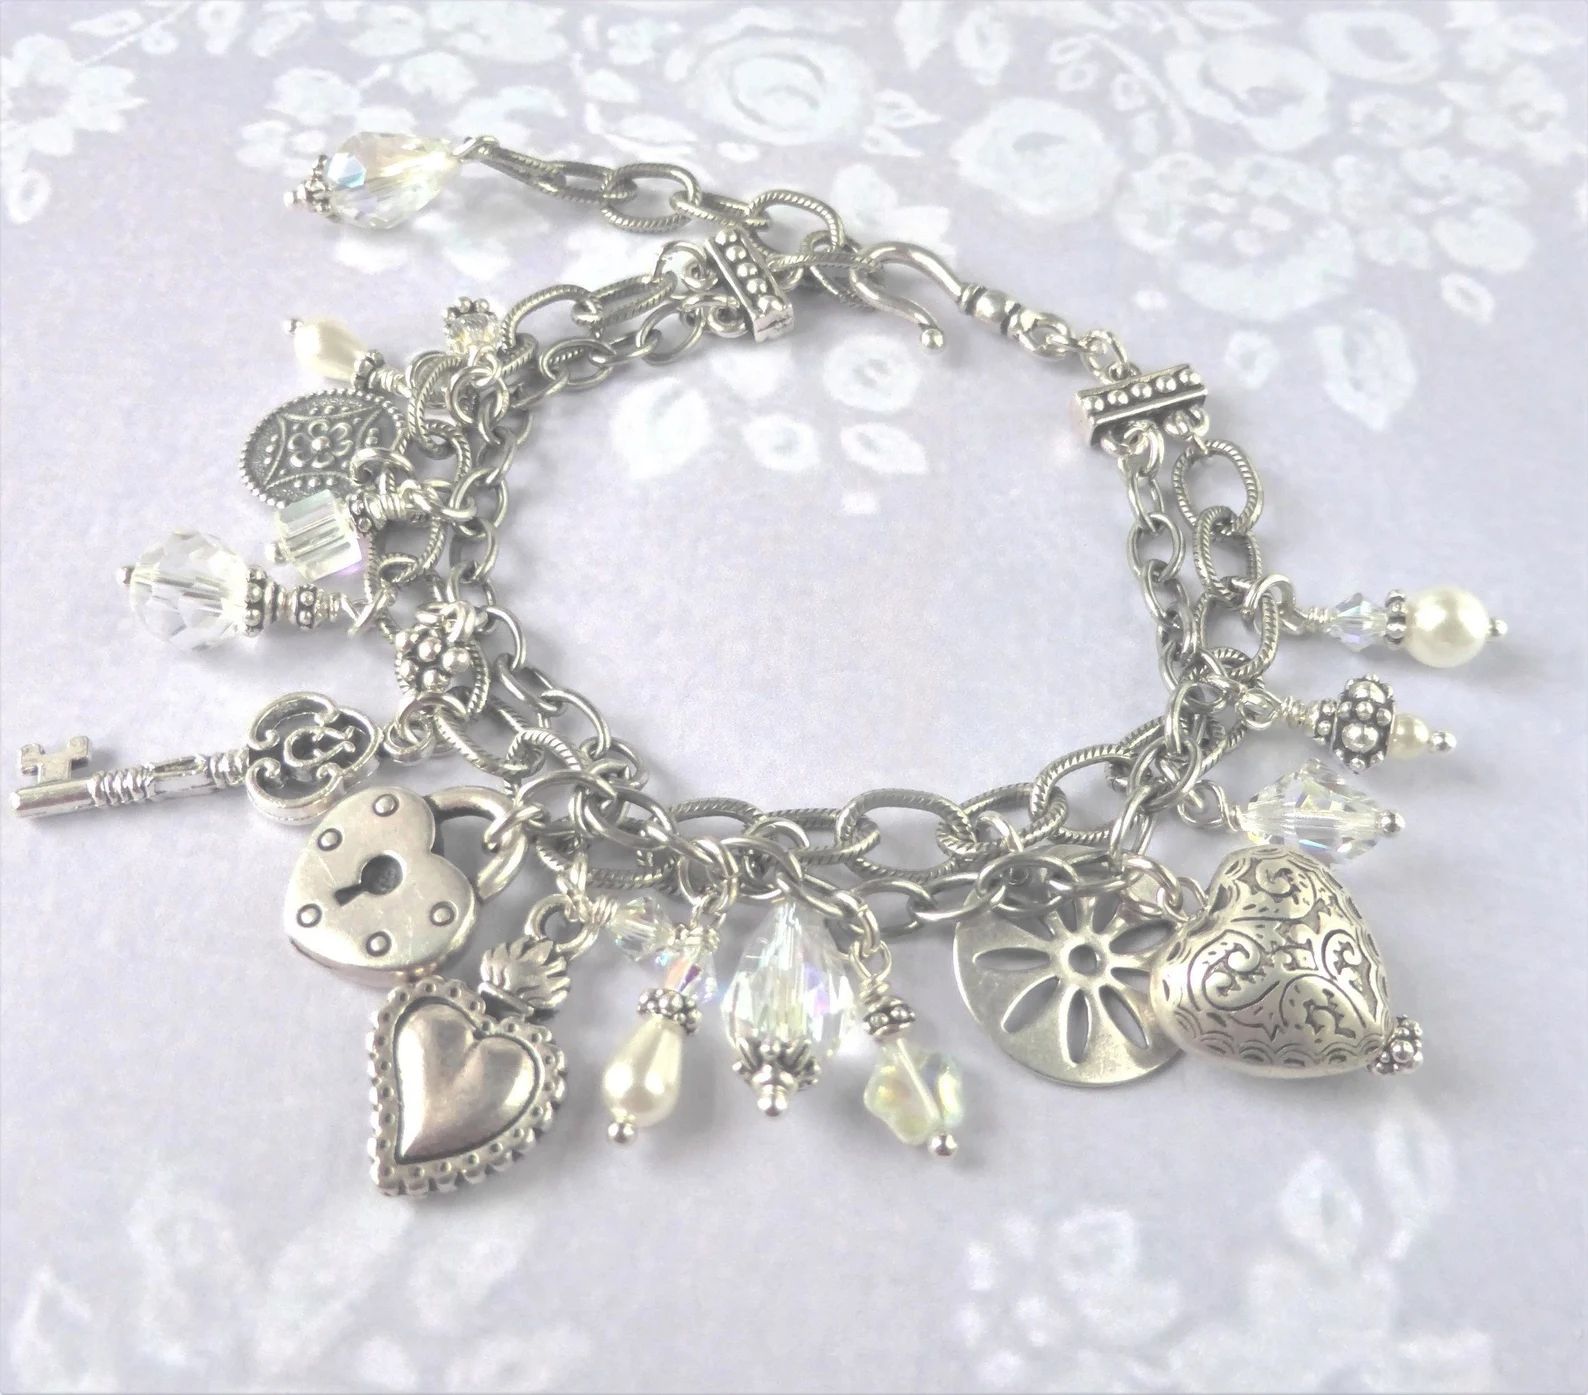 Swarovski Crystal Charm Bracelet Vintage Style Boho Heart - Etsy | Etsy (US)